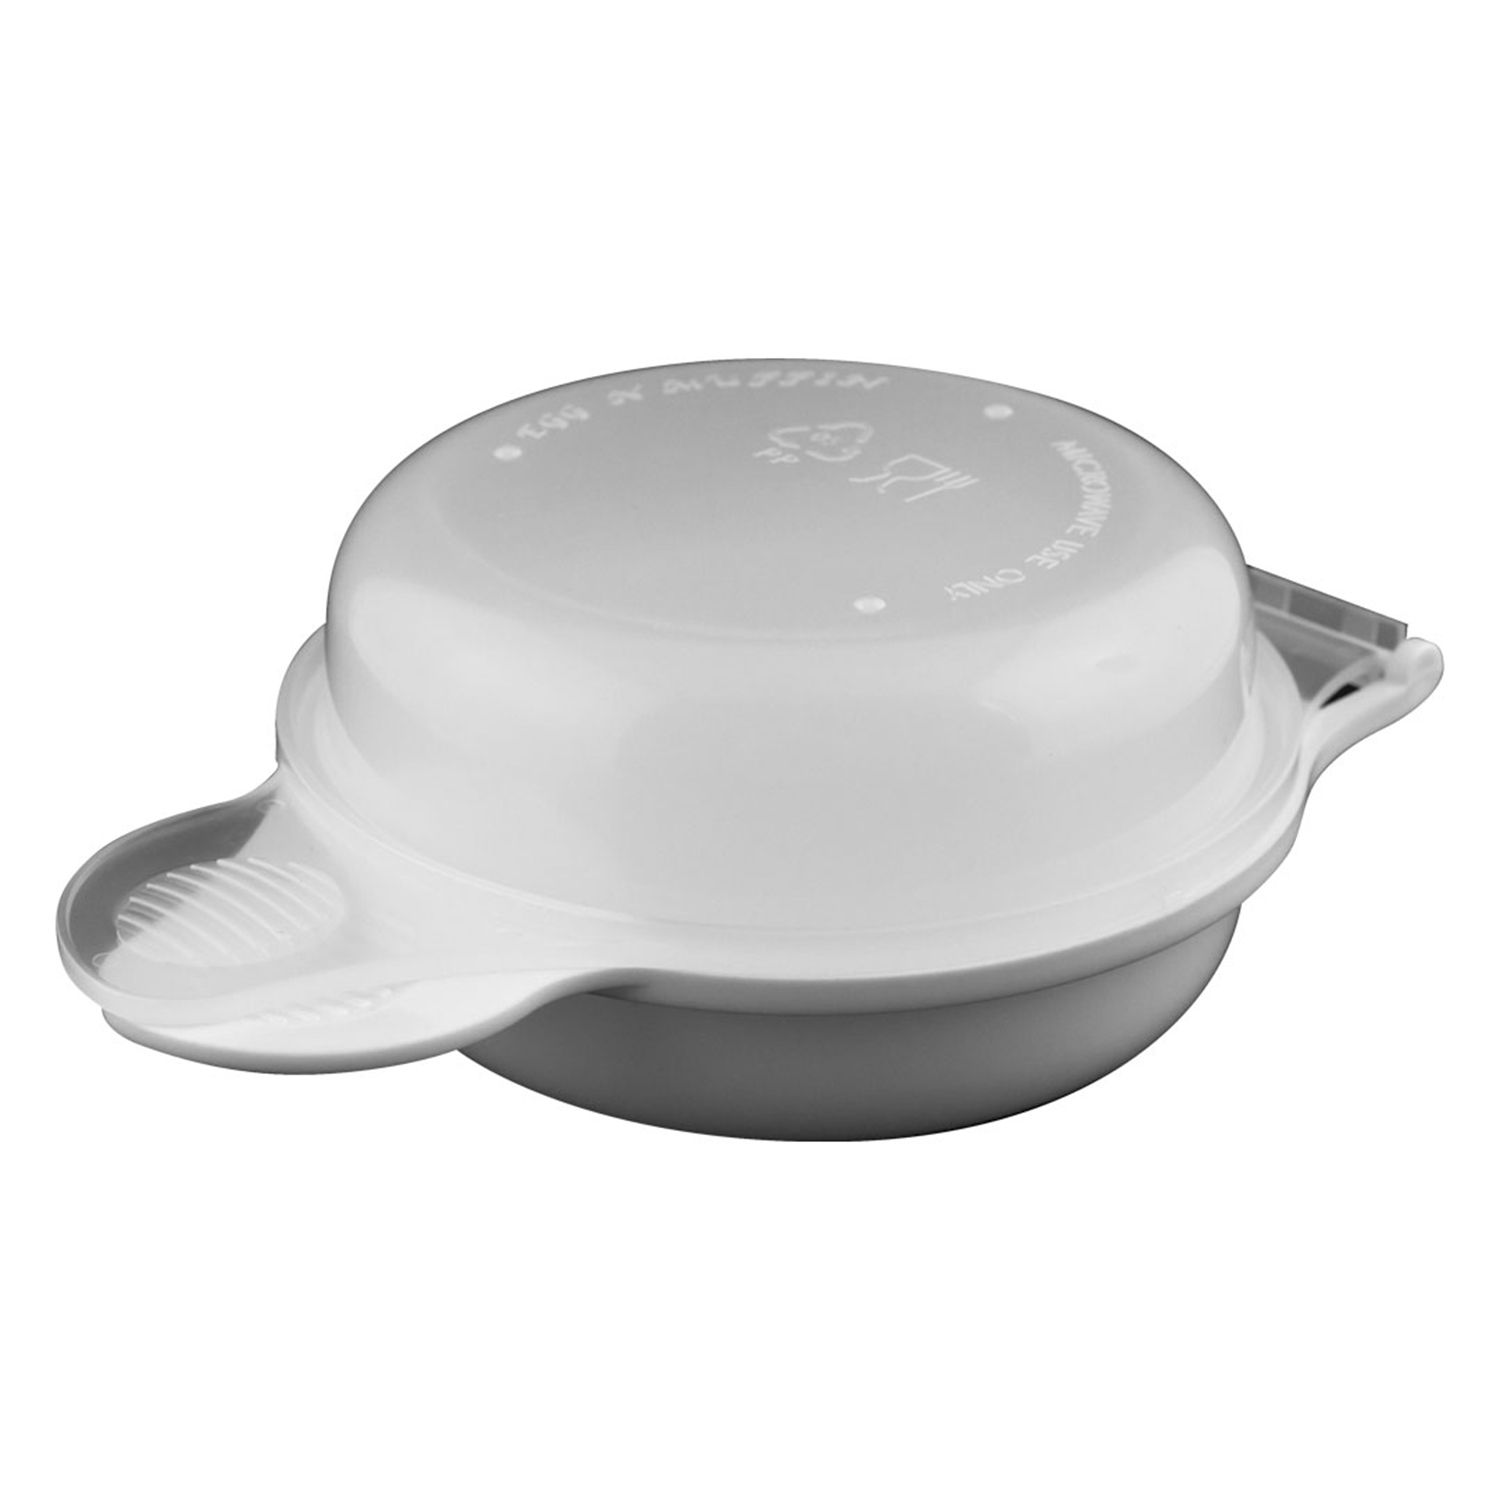 Microwave Egg N Muffin Maker, White - 1 Pkg - The Online Drugstore ©